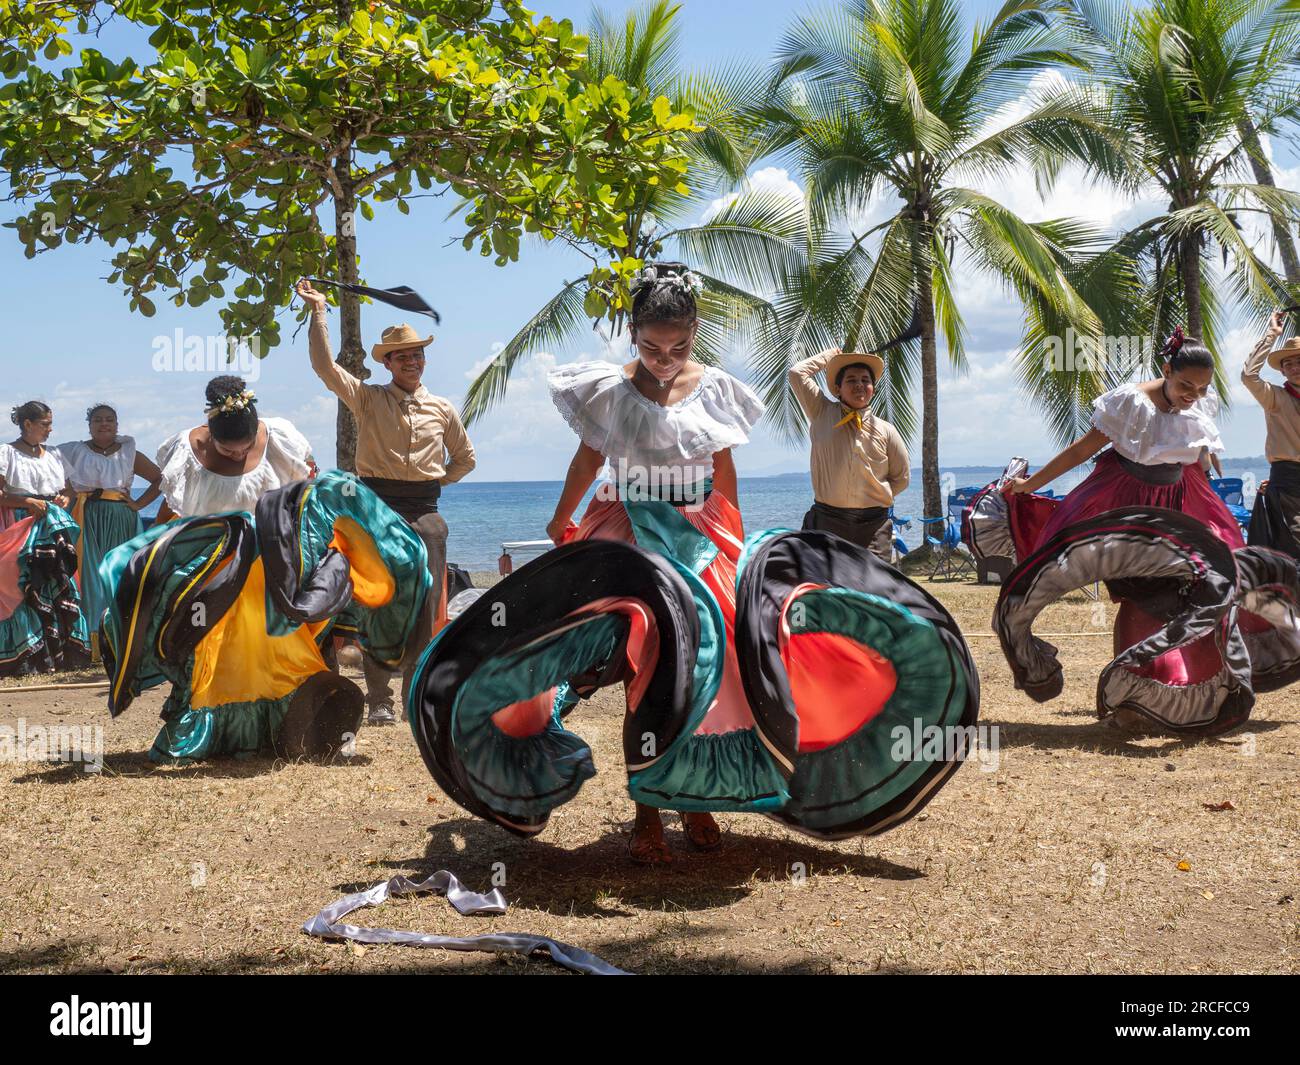 Un groupe de jeunes danseuses costaricaines en tenue traditionnelle se produit à Playa Blanca, El Golfito, Costa Rica. Banque D'Images